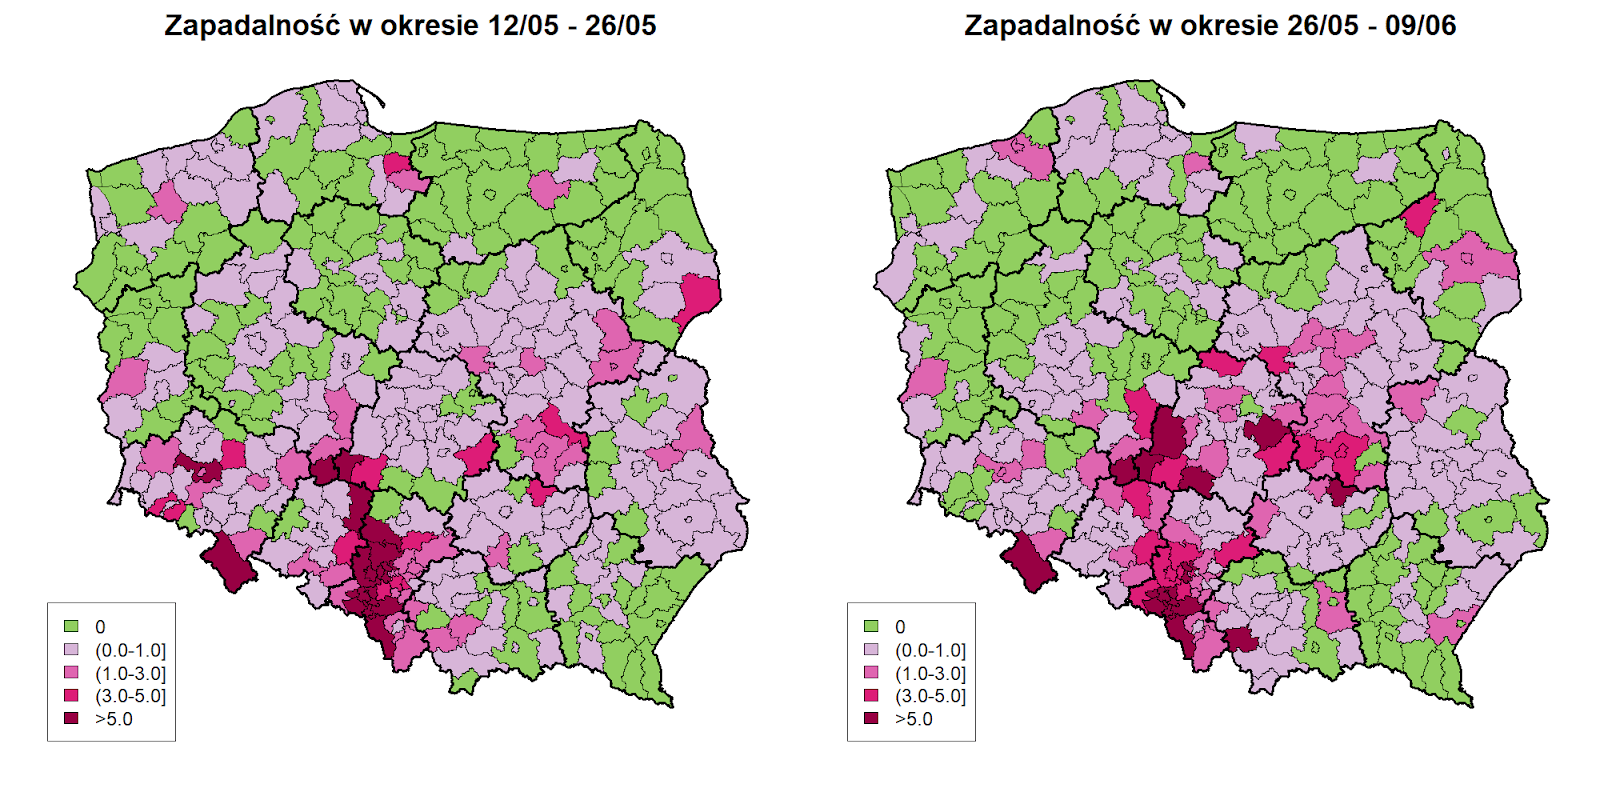 <b>Zróżnicowanie przestrzenne zapadalności (liczba przypadków / 10 tys osób) w okresach 06/05 - 20/05 oraz 20/05 - 03/06.</b> Spadek liczby nowych przypadków jest nieznaczny - widoczny głównie w województwach wielkopolskim i kujawsko-pomorskim.